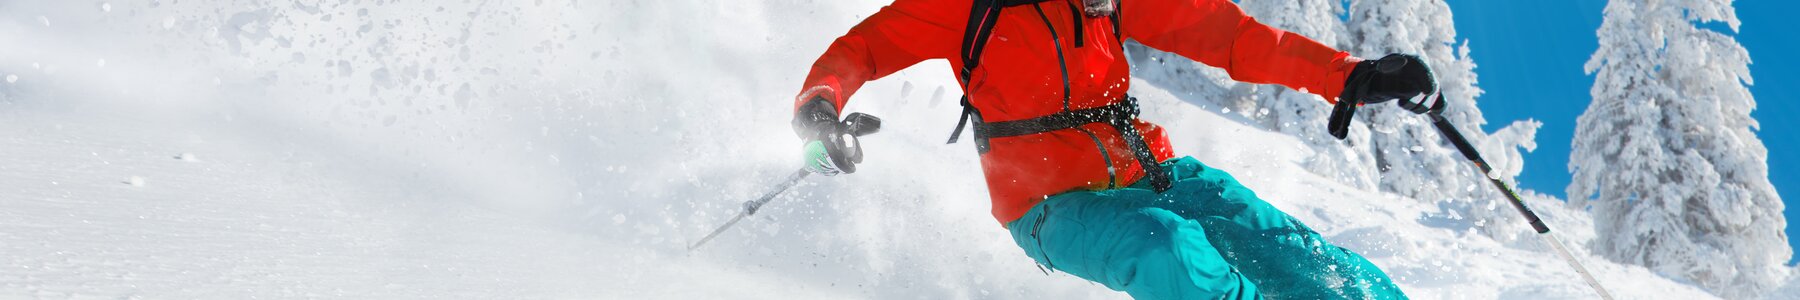 Kom nu de nieuwste ski artikelen kopen voor je ski outfit bij Delsport